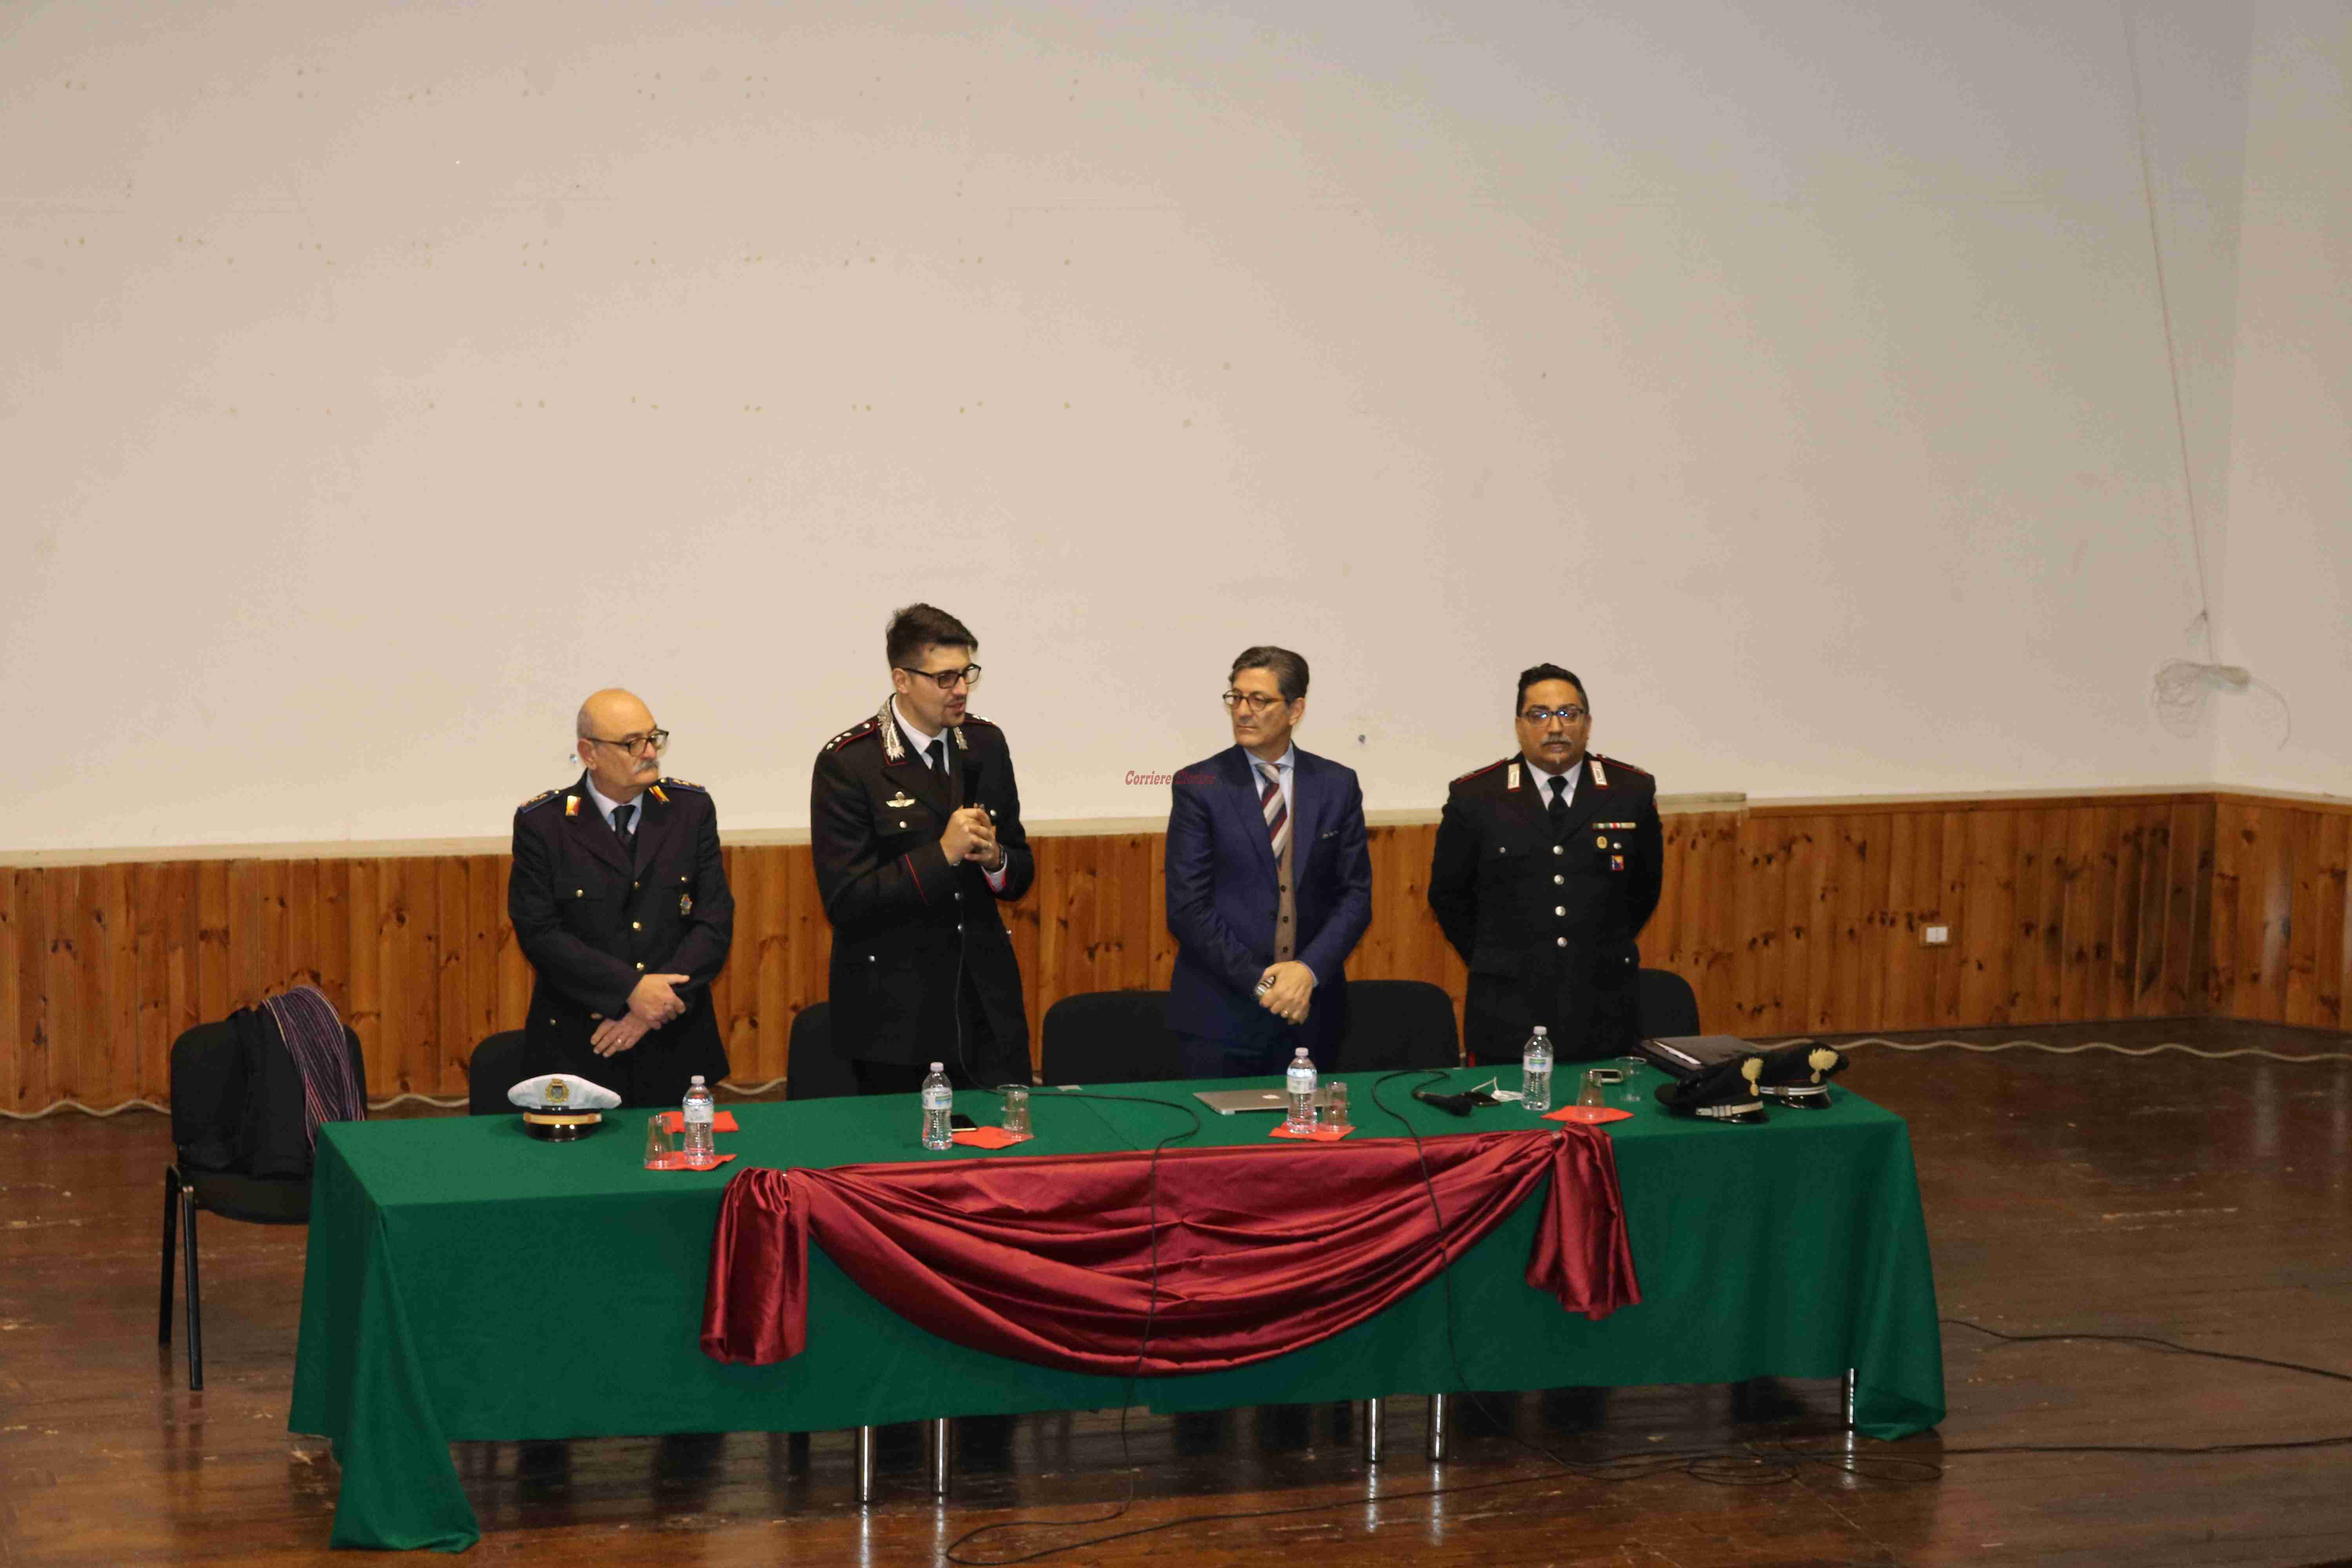 Carabinieri e Amministrazione incontrano i giovani sul tema della legalità